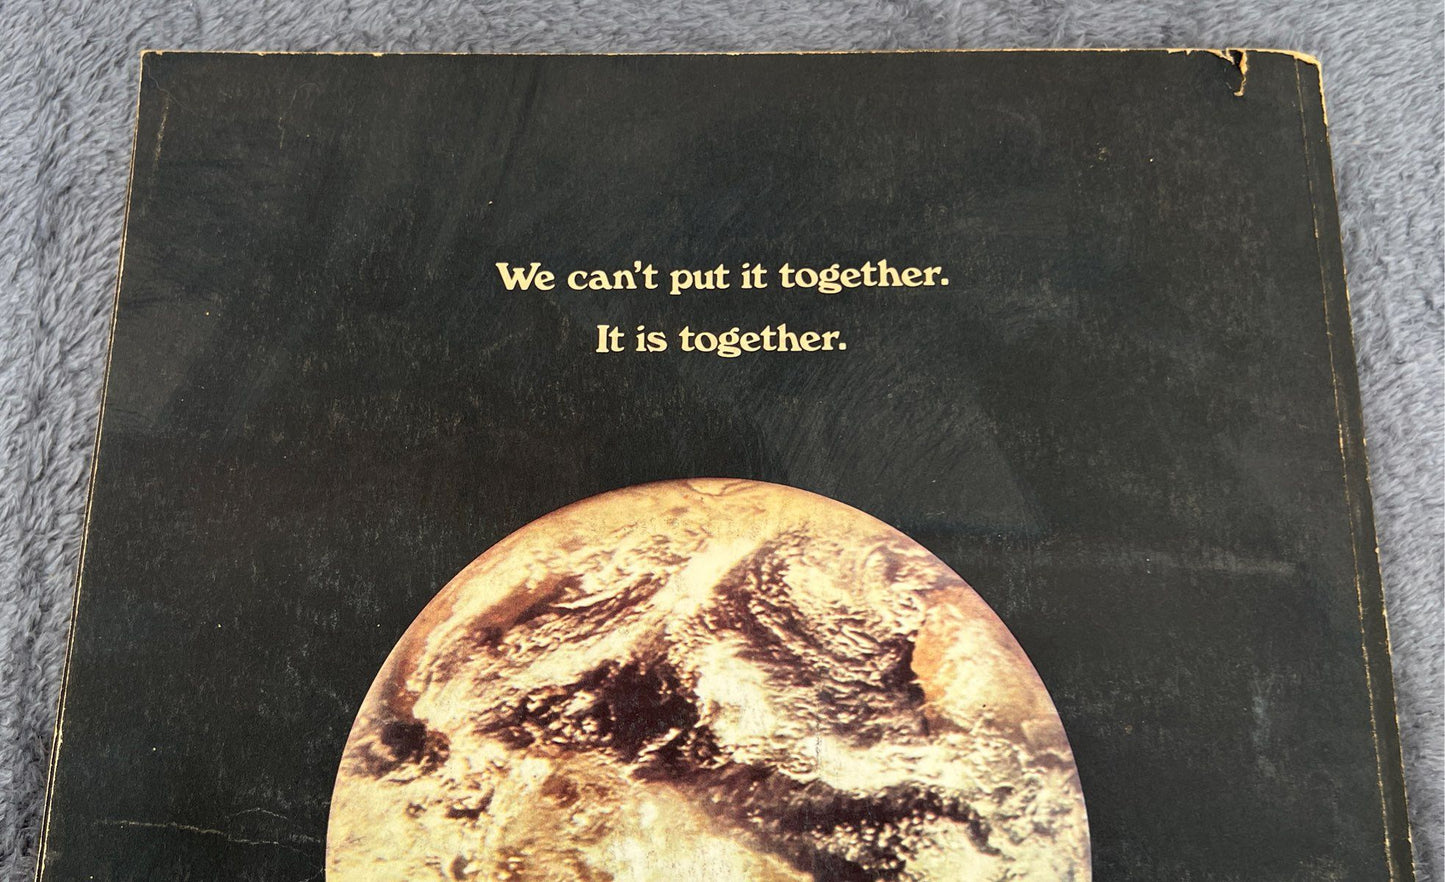 VTG The Last Whole Earth Catalog: Access To Tools-Random House-May, 1971 #1170